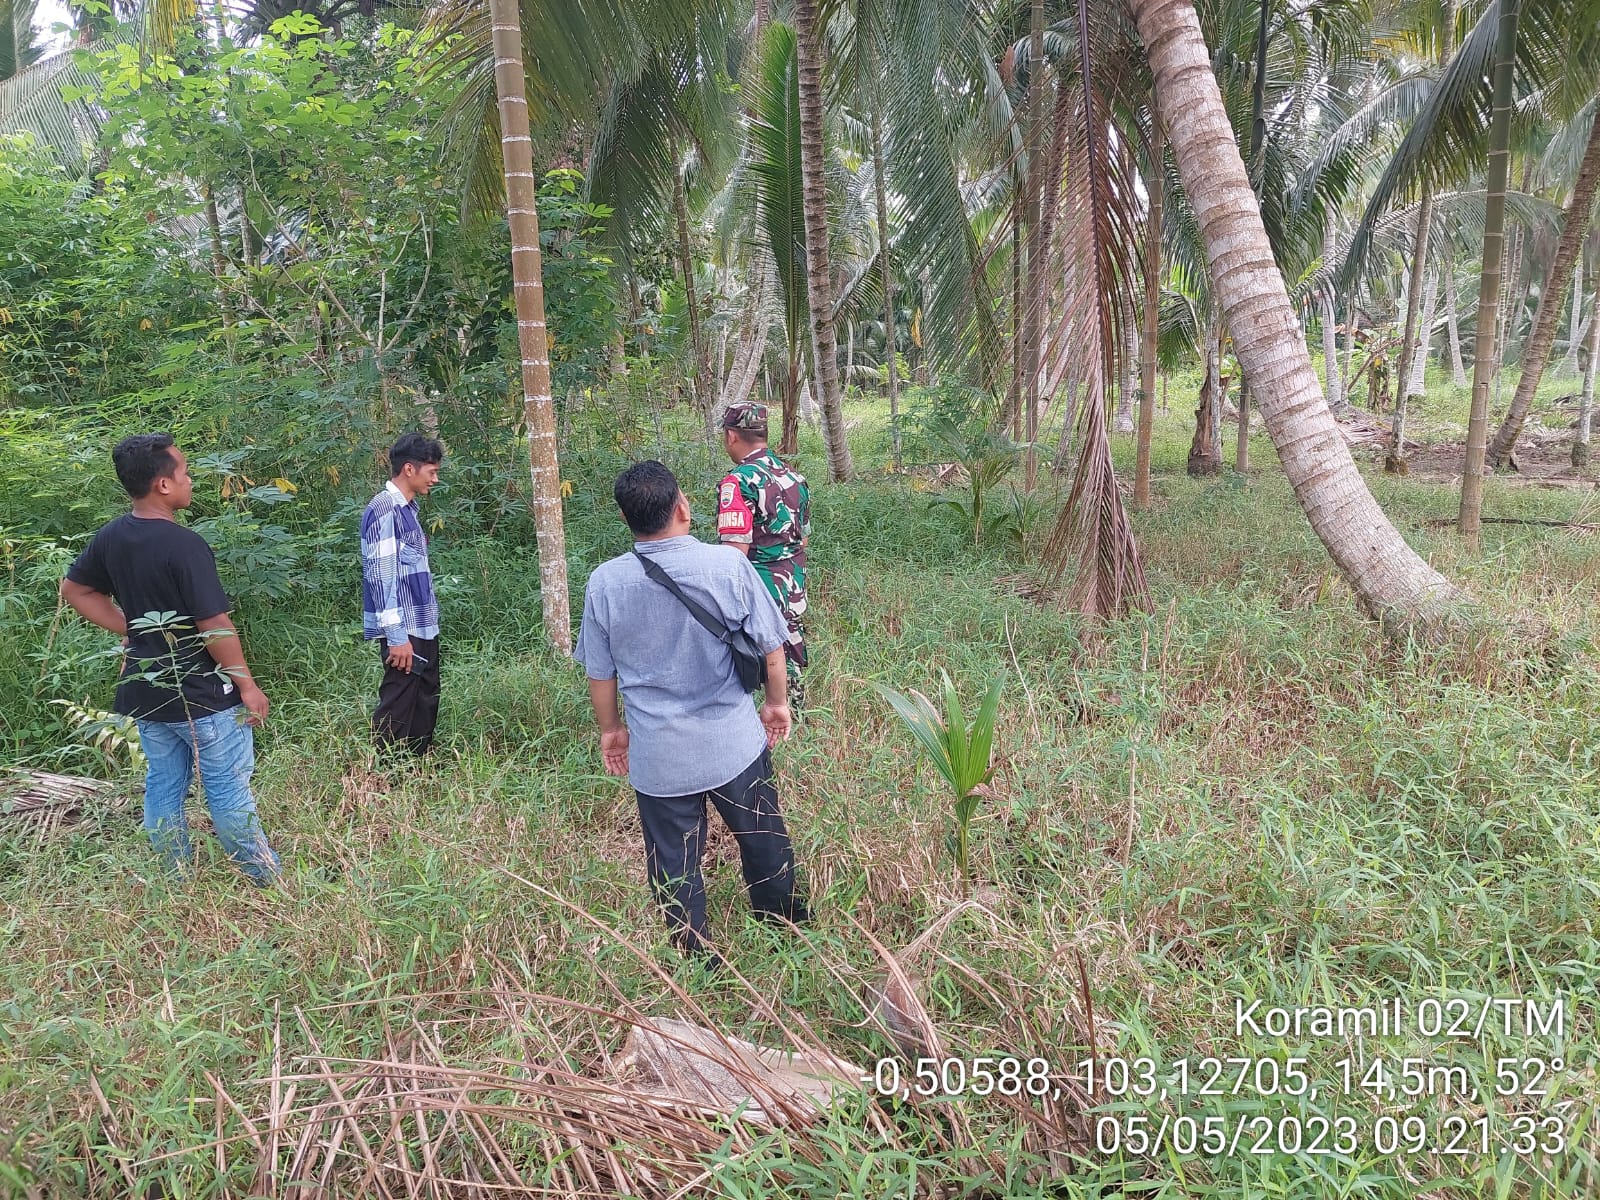 Bersama 3 Warga Desa Sungai Ambat, Babinsa Koramil 02/TM Laksanakan Patroli dan Sosialisasi Karhutla 